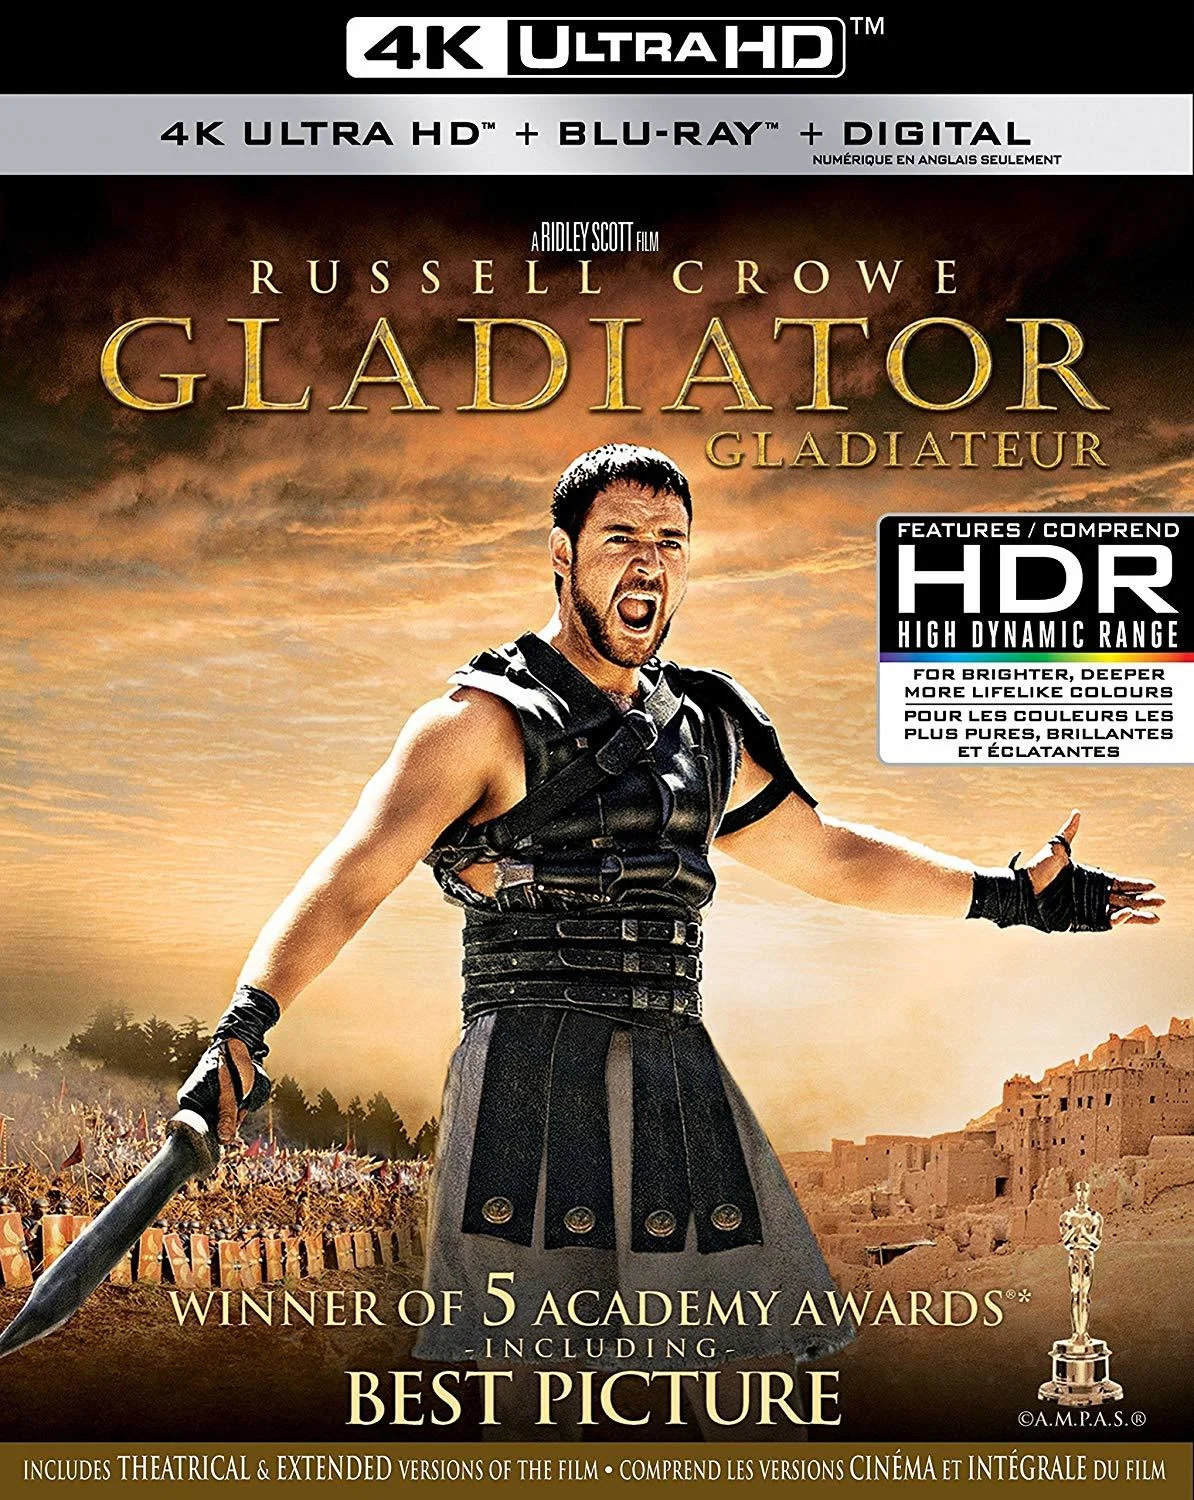 Gladiator (4K-UHD) on MovieShack